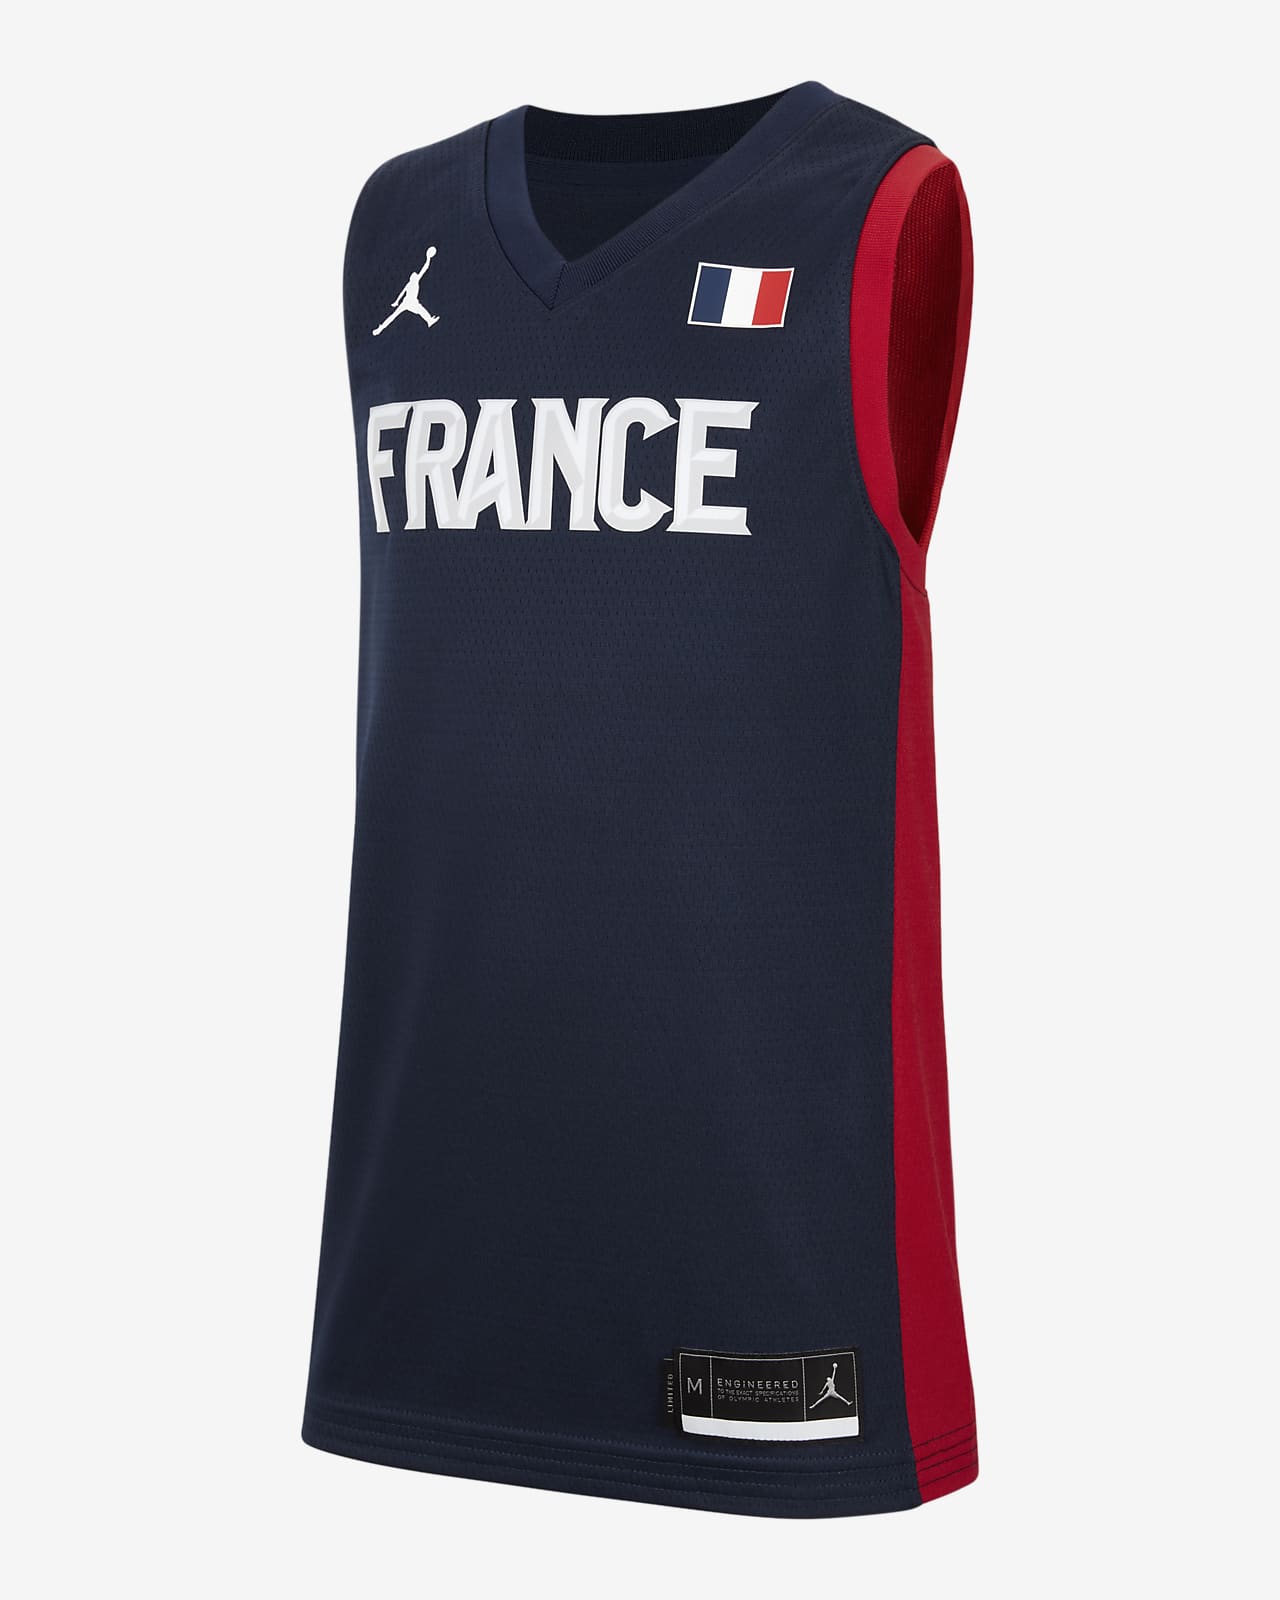 France (Road) Older Kids' Jordan Basketball Jersey